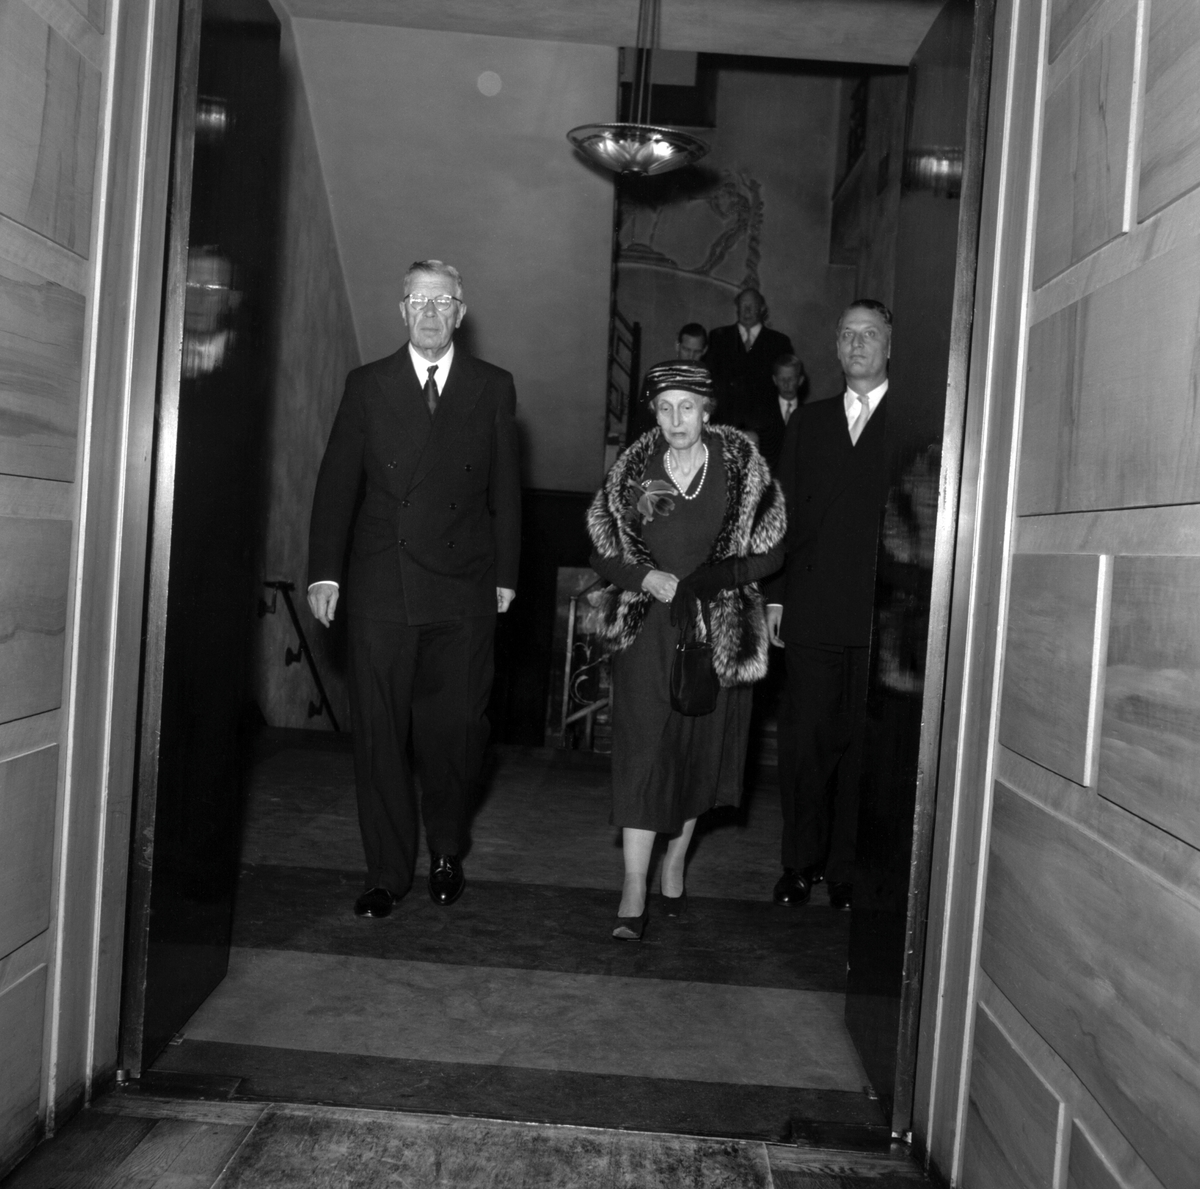 Jubileums avslutning. Kung Gustaf VI Adolf och Drottning Louise lämnar Konserthuset.